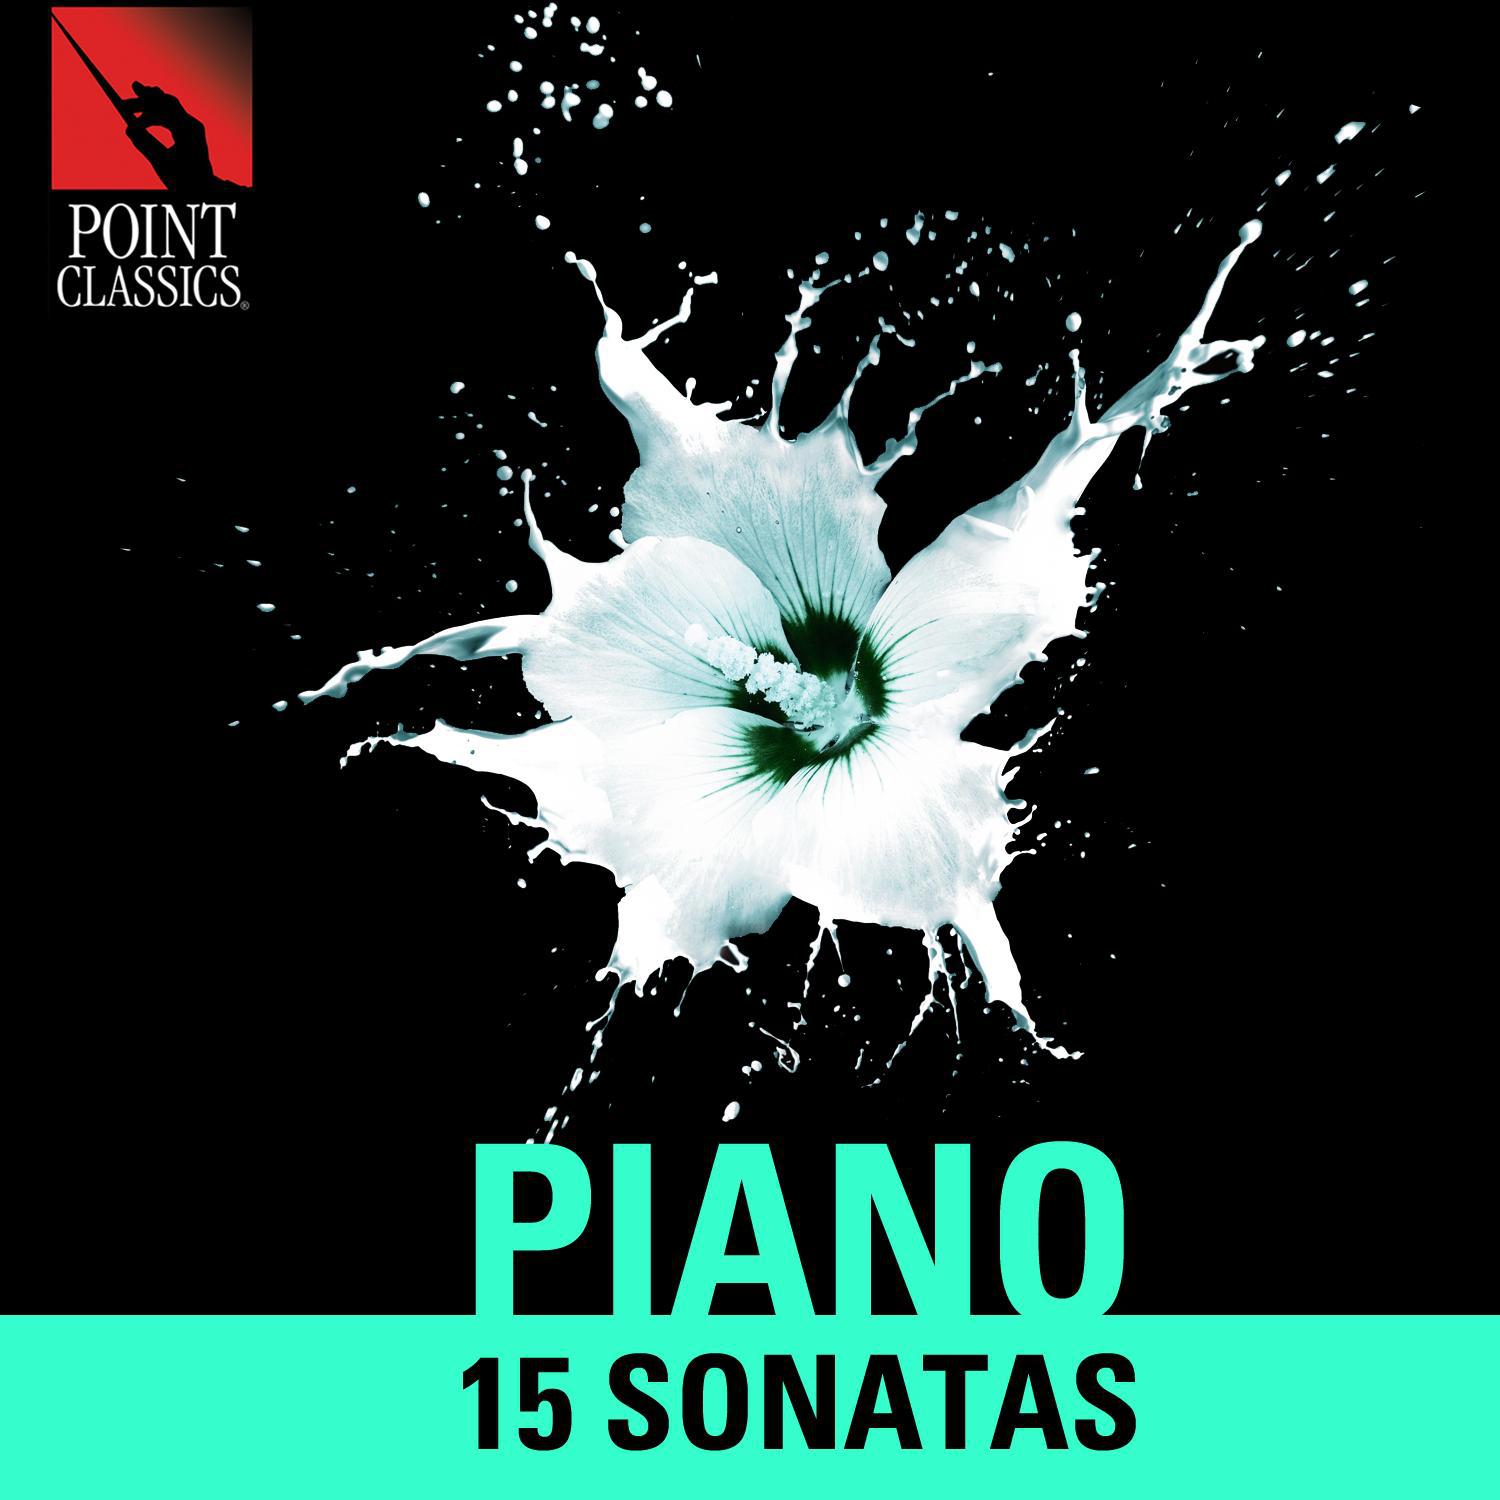 Piano: 15 Sonatas